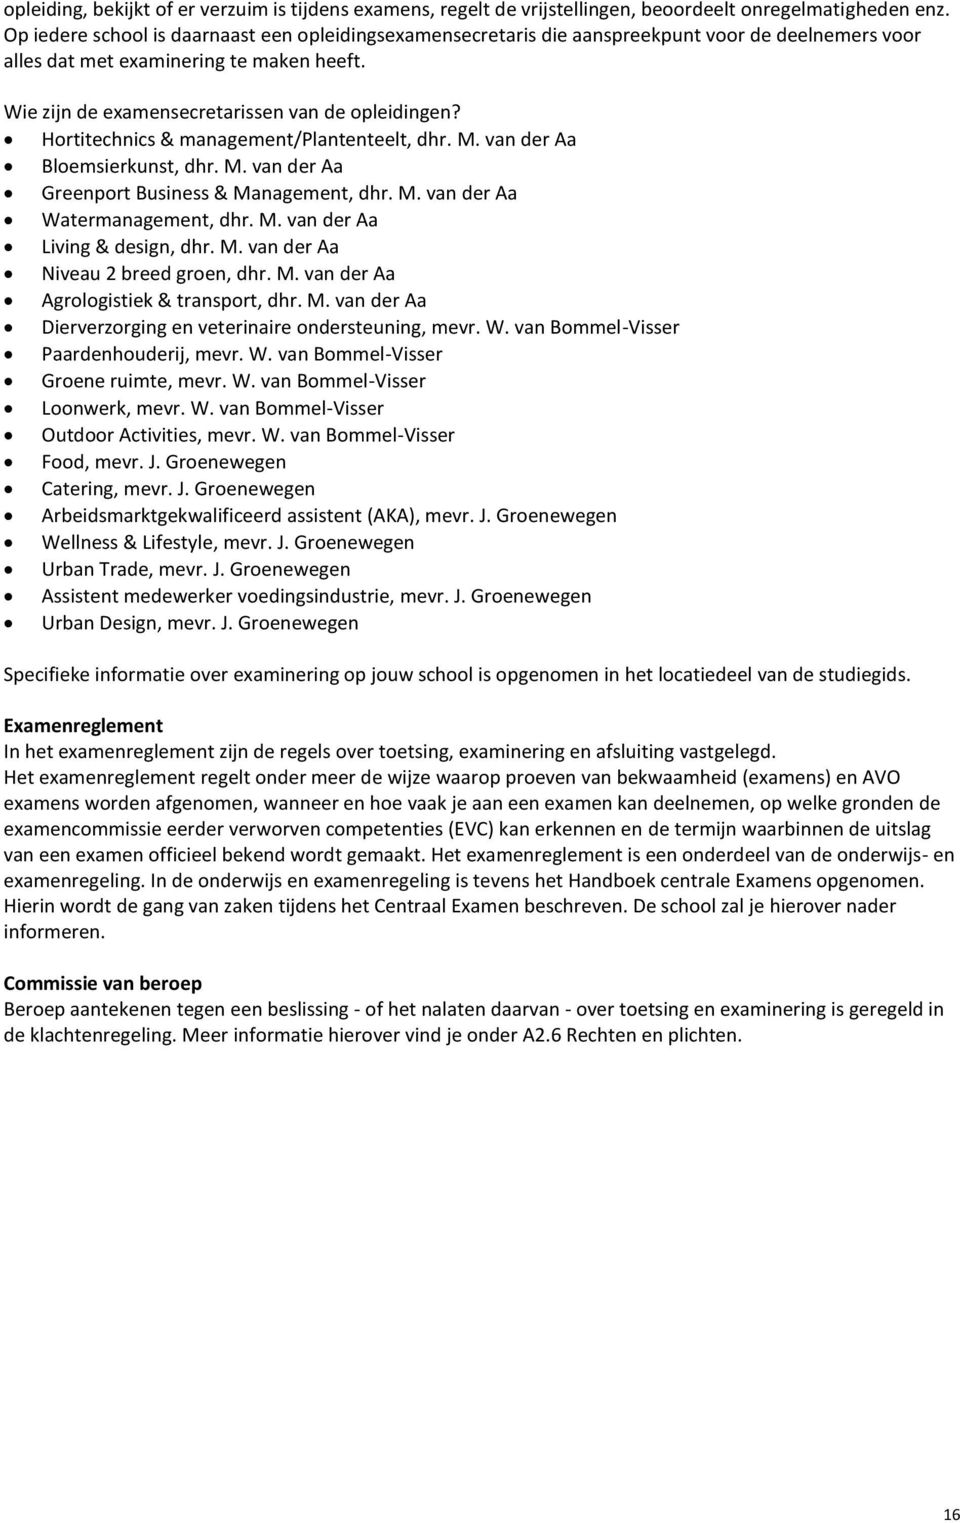 Hortitechnics & management/plantenteelt, dhr. M. van der Aa Bloemsierkunst, dhr. M. van der Aa Greenport Business & Management, dhr. M. van der Aa Watermanagement, dhr. M. van der Aa Living & design, dhr.